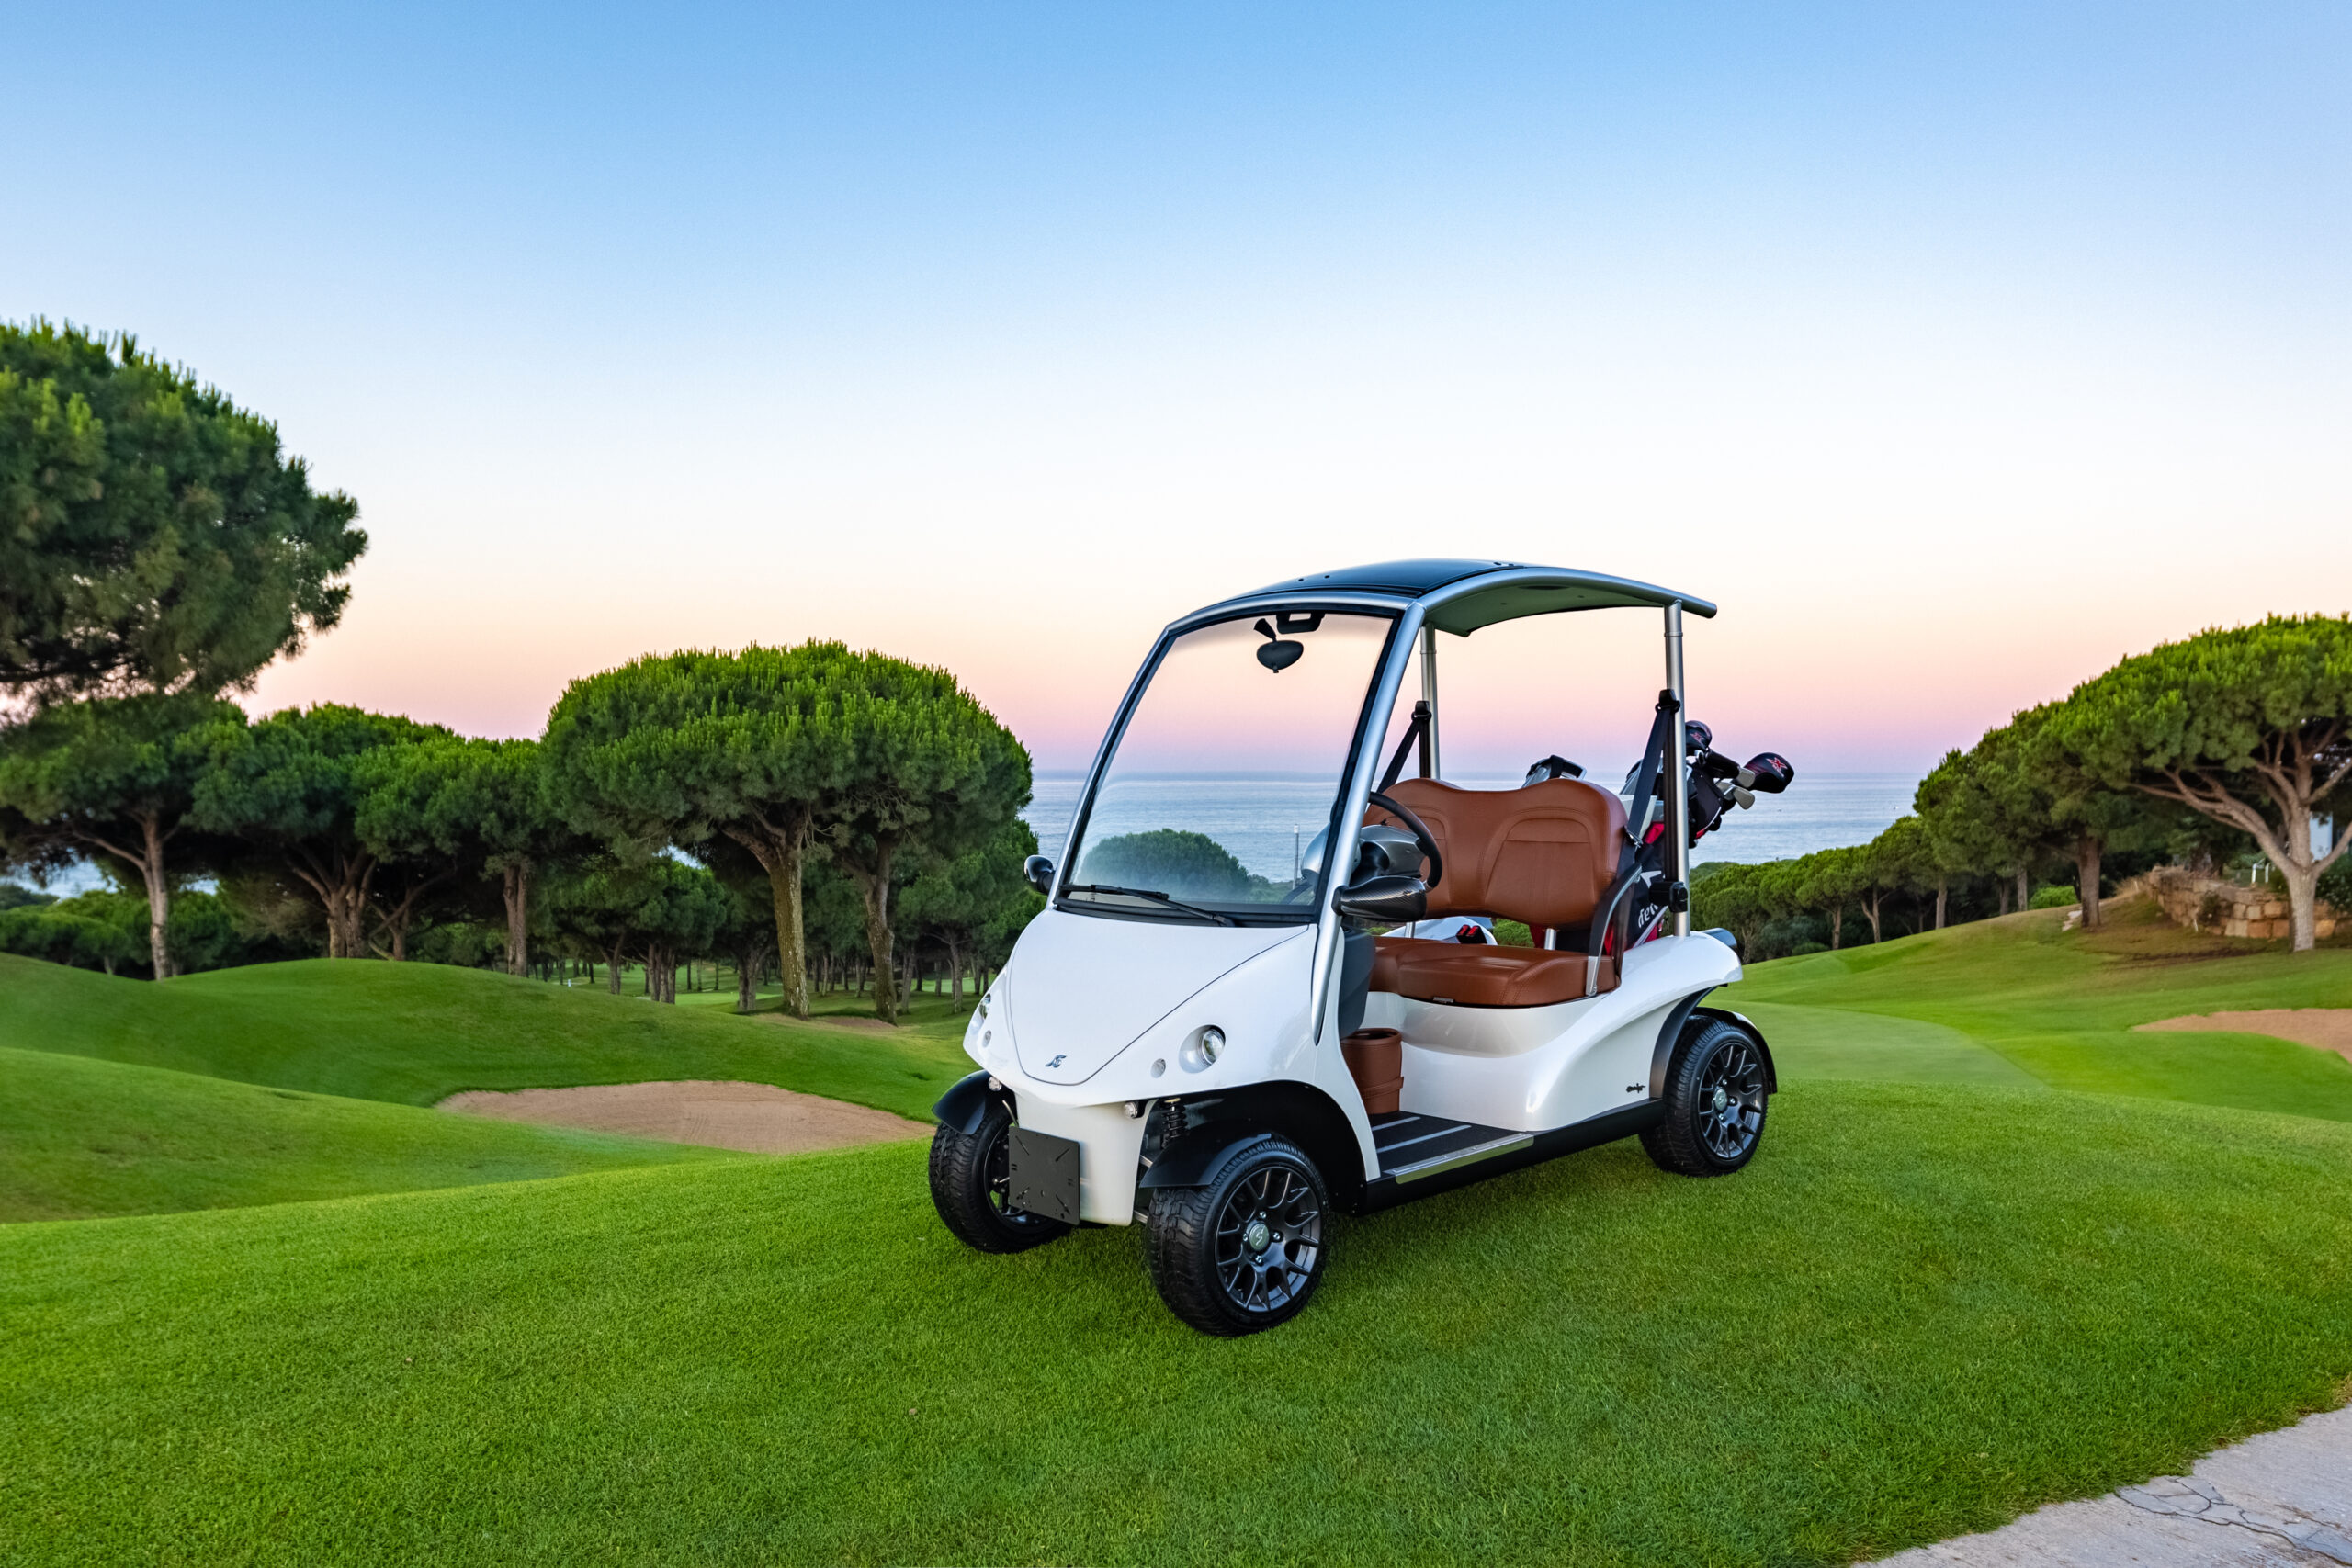 Home - Garia Luxury Golf Car